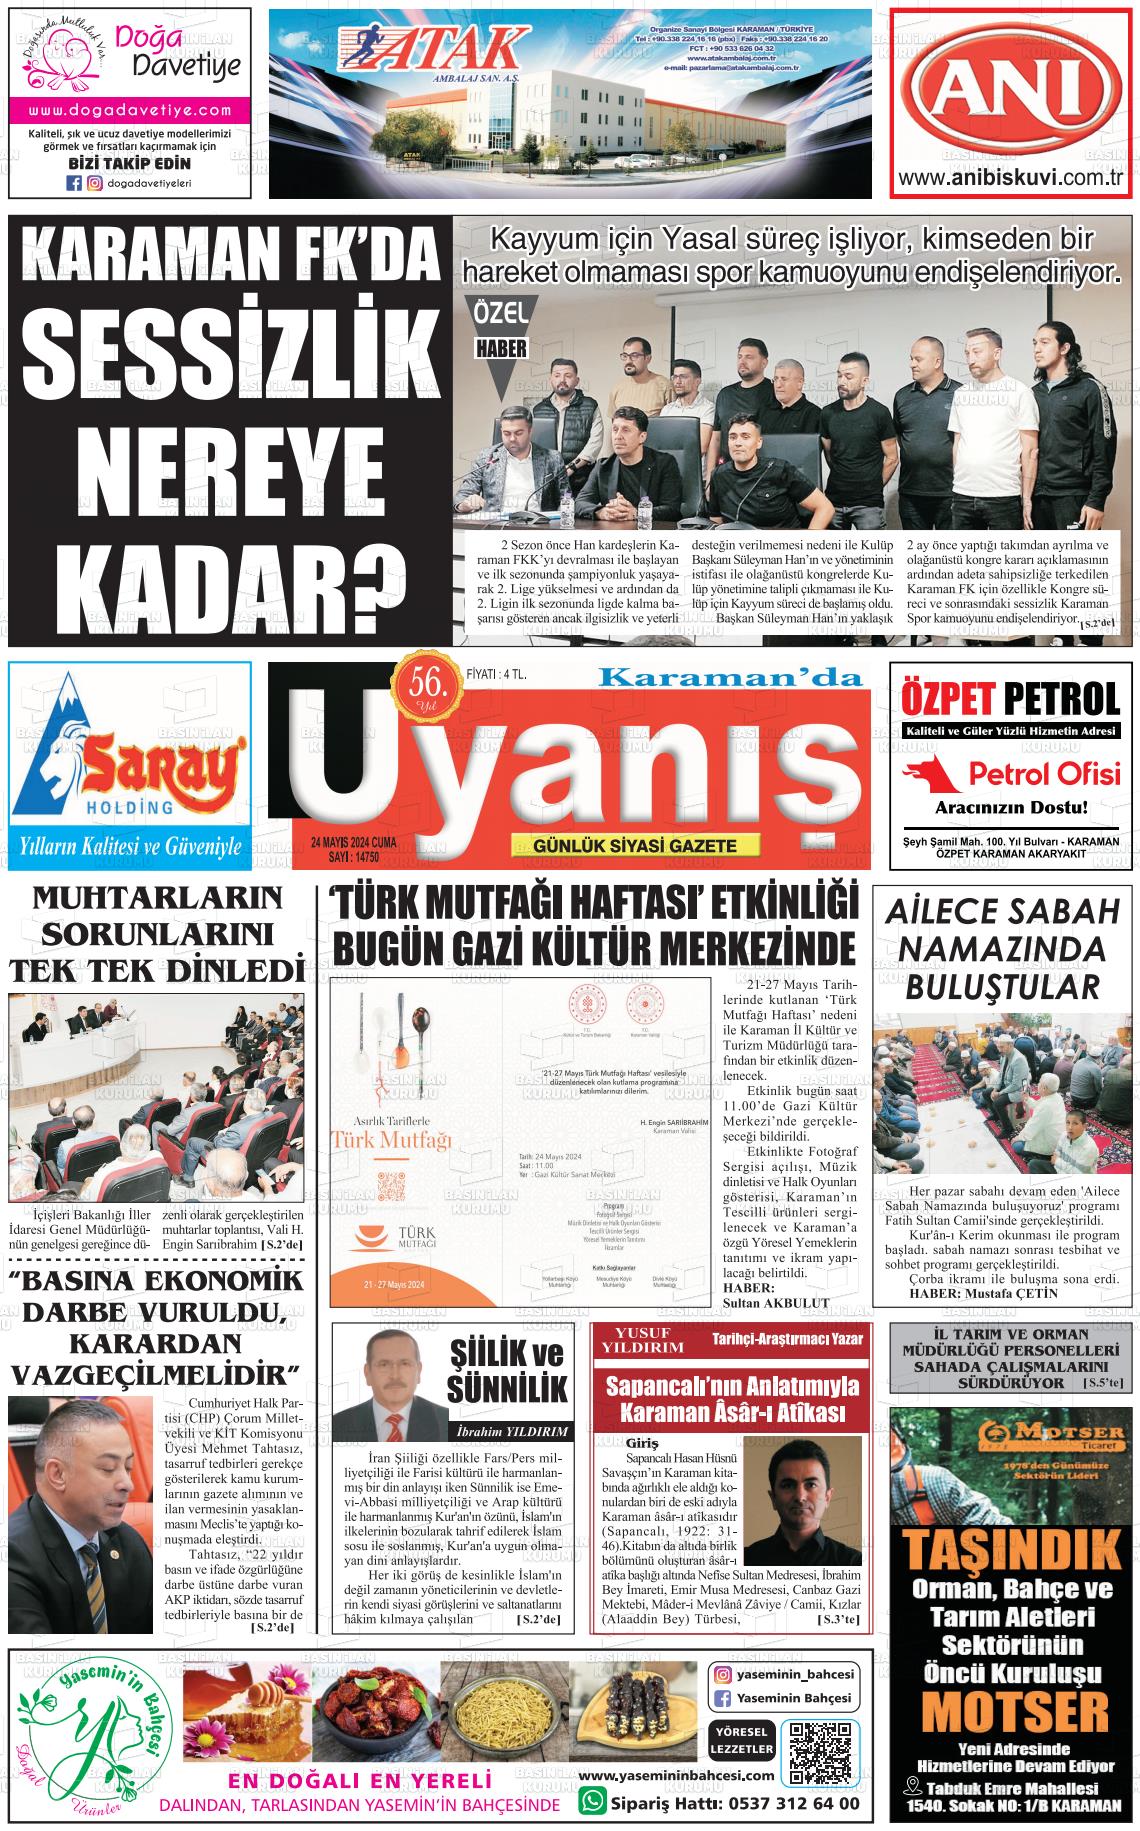 KARAMANDA UYANIŞ Gazetesi